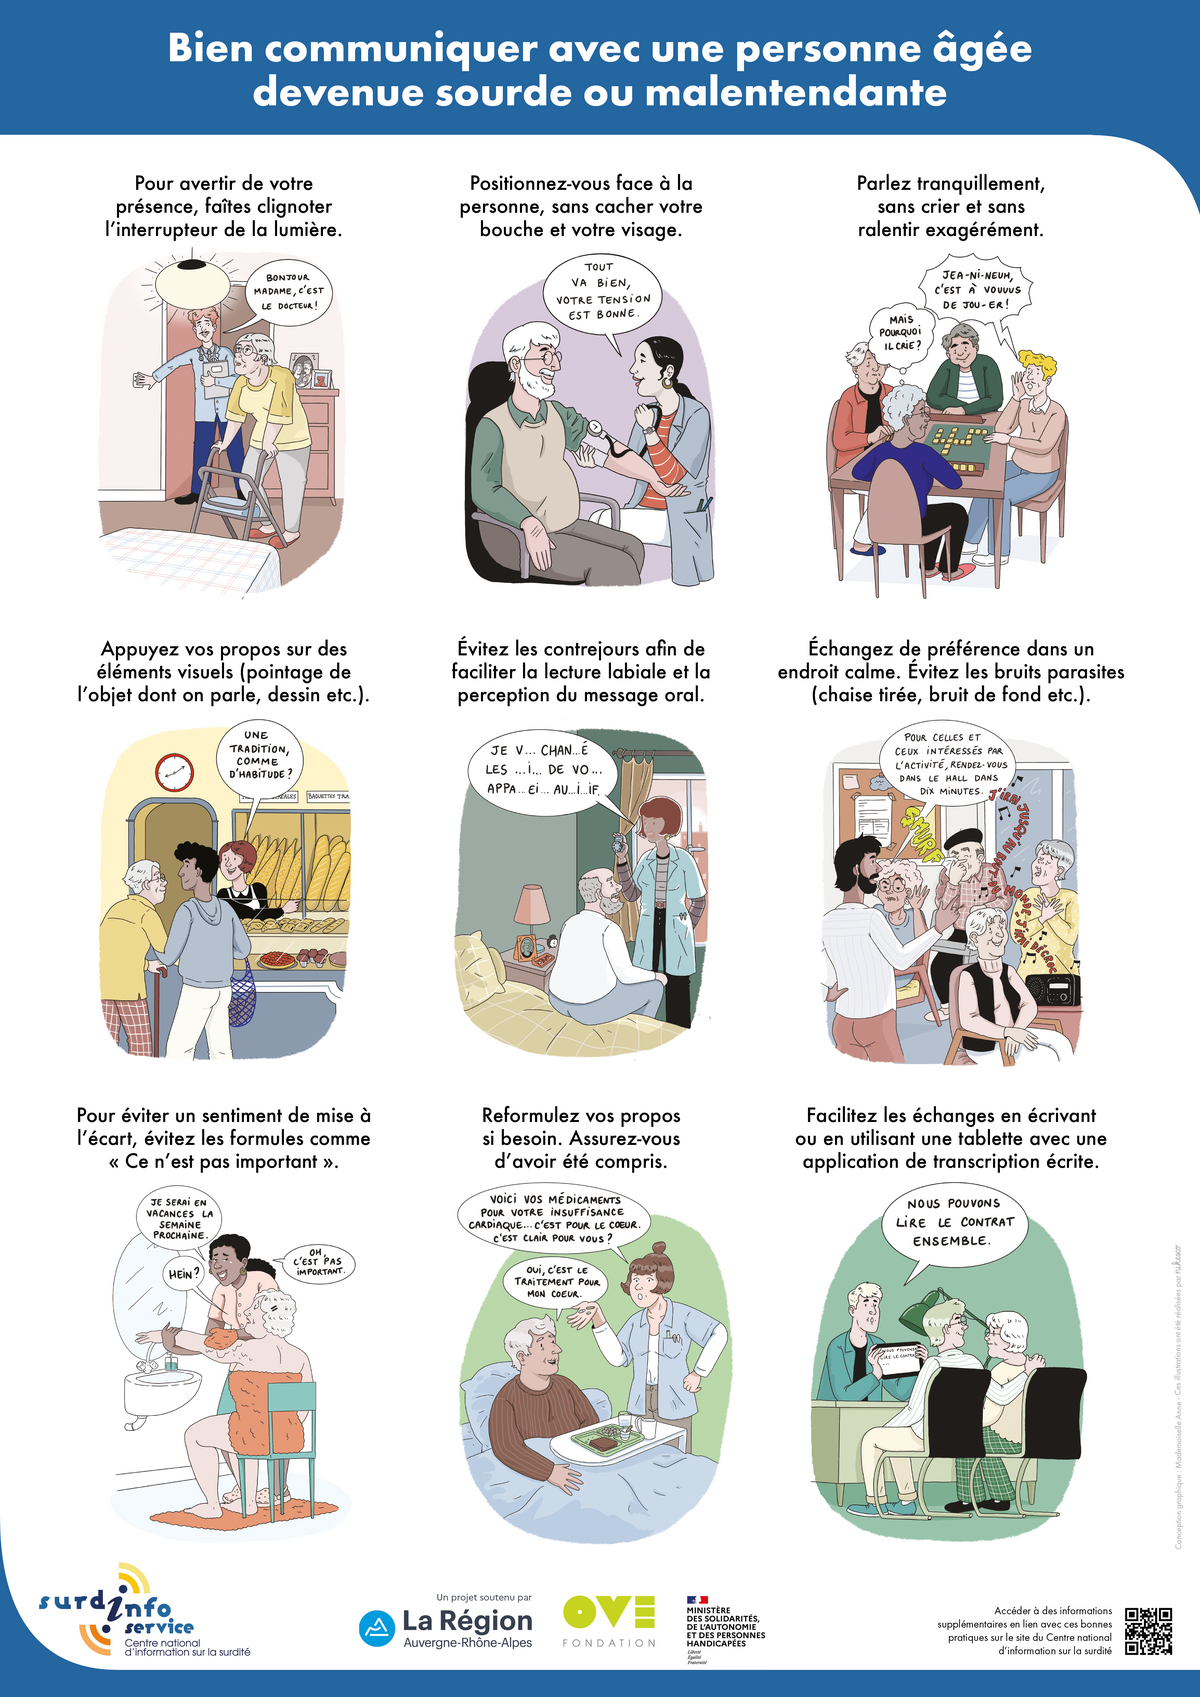 Affiche avec 9 dessins "Bien communiquer avec une personne âgée devenue sourde ou malentendante".